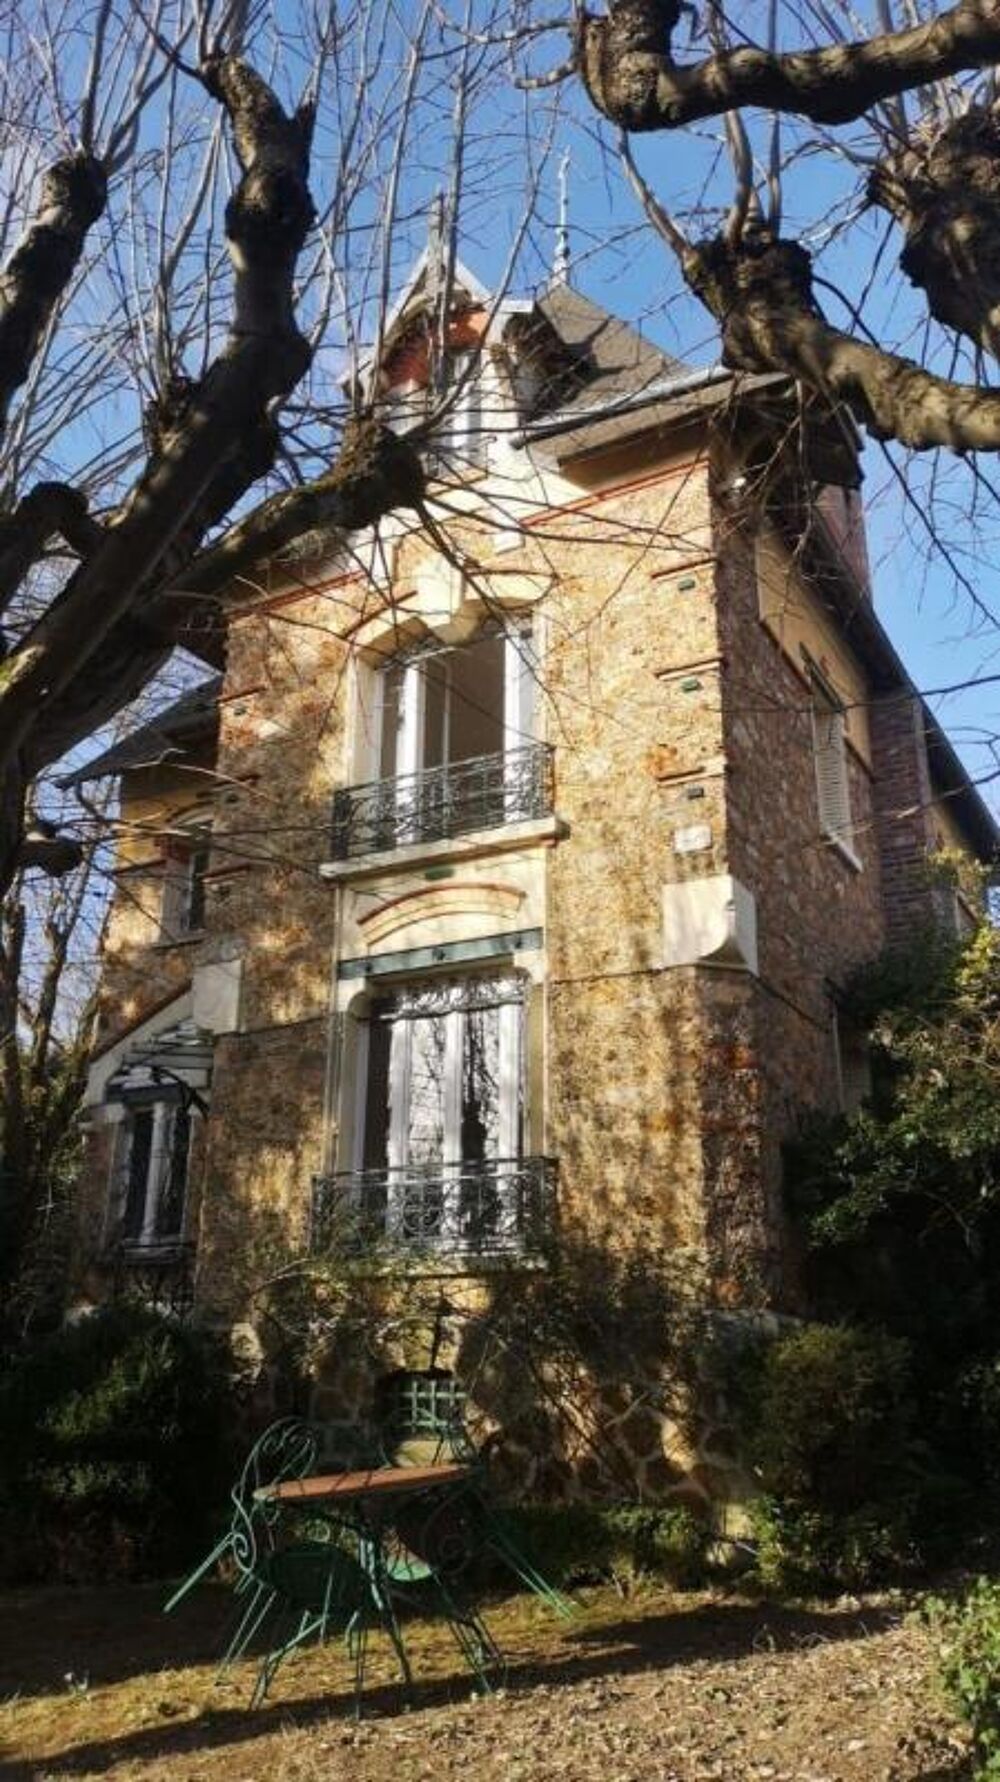 Vente Proprit/Chteau ORSAY-Belle Meuliere et sa maison secondaire Orsay